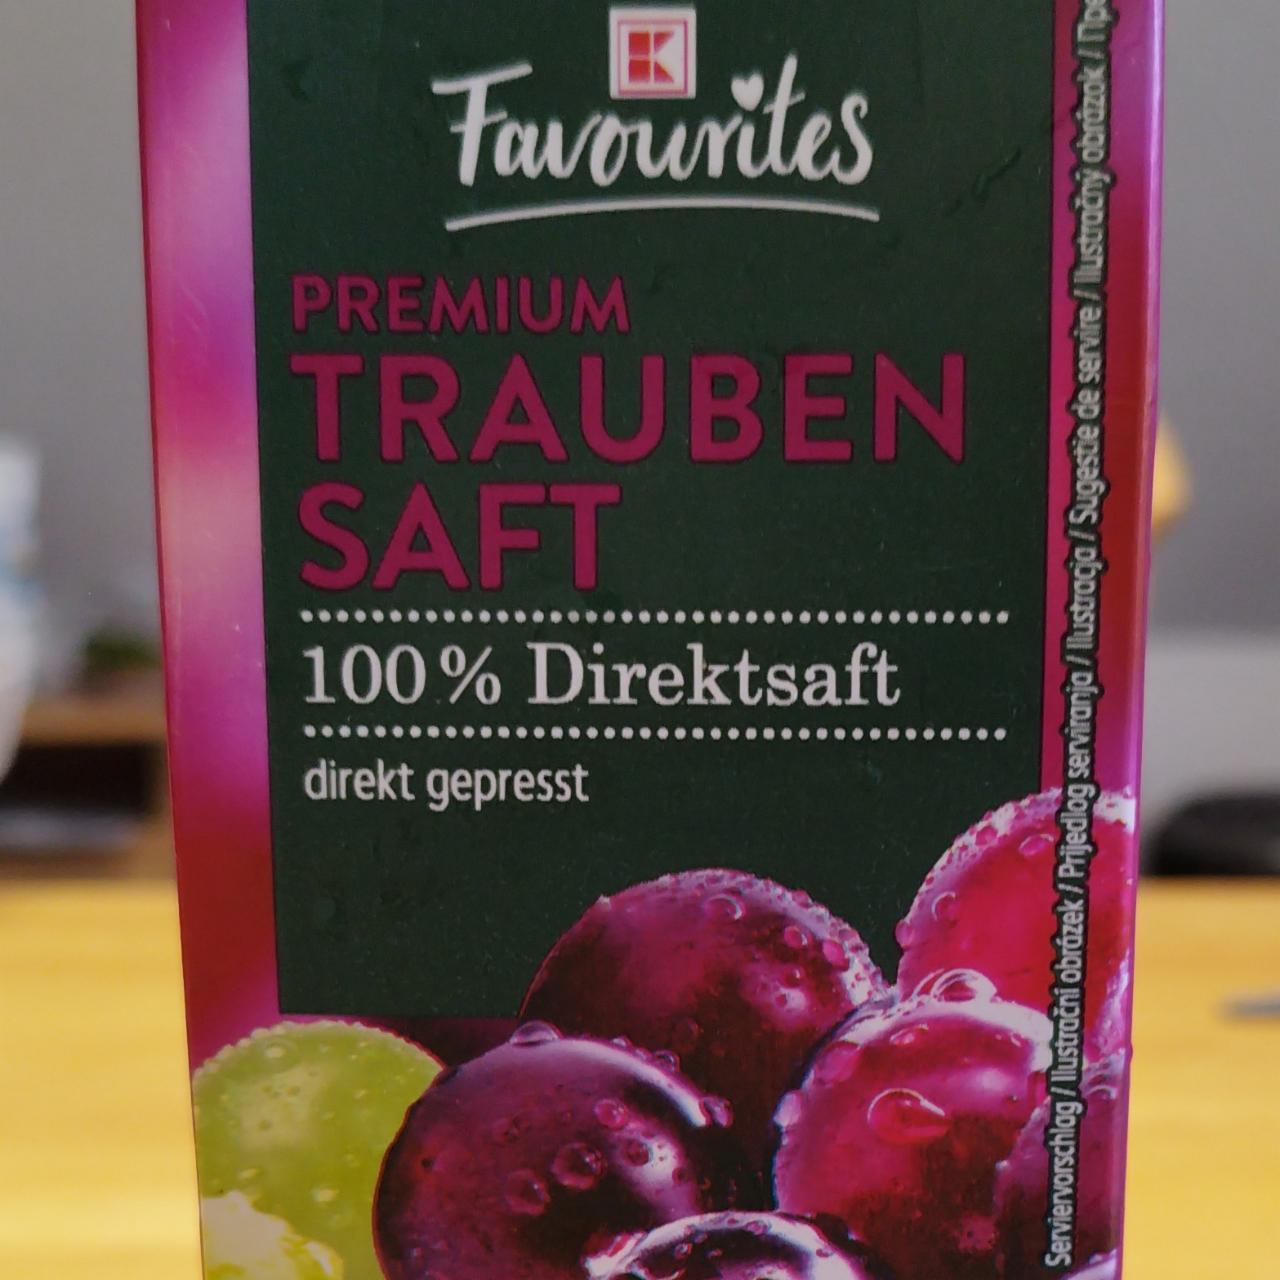 Фото - Сок виноградный 100% Trauben Saft K-Favourites